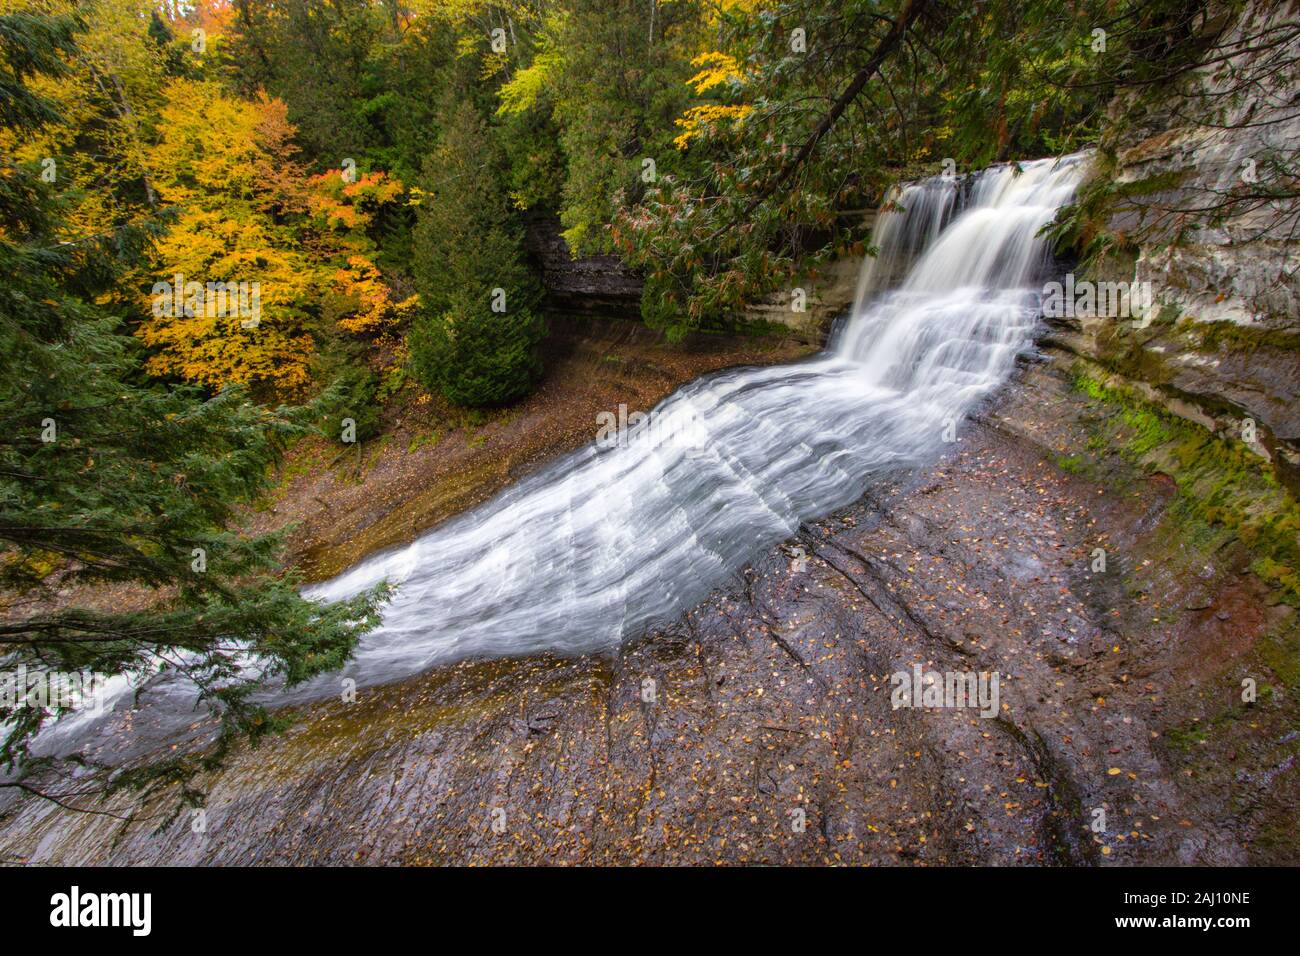 Herbst Michigan Wasserfall. Laughing Whitefish fällt, malerischen Ort durch Herbstlaub in der Oberen Halbinsel von Michigan umgeben. Stockfoto